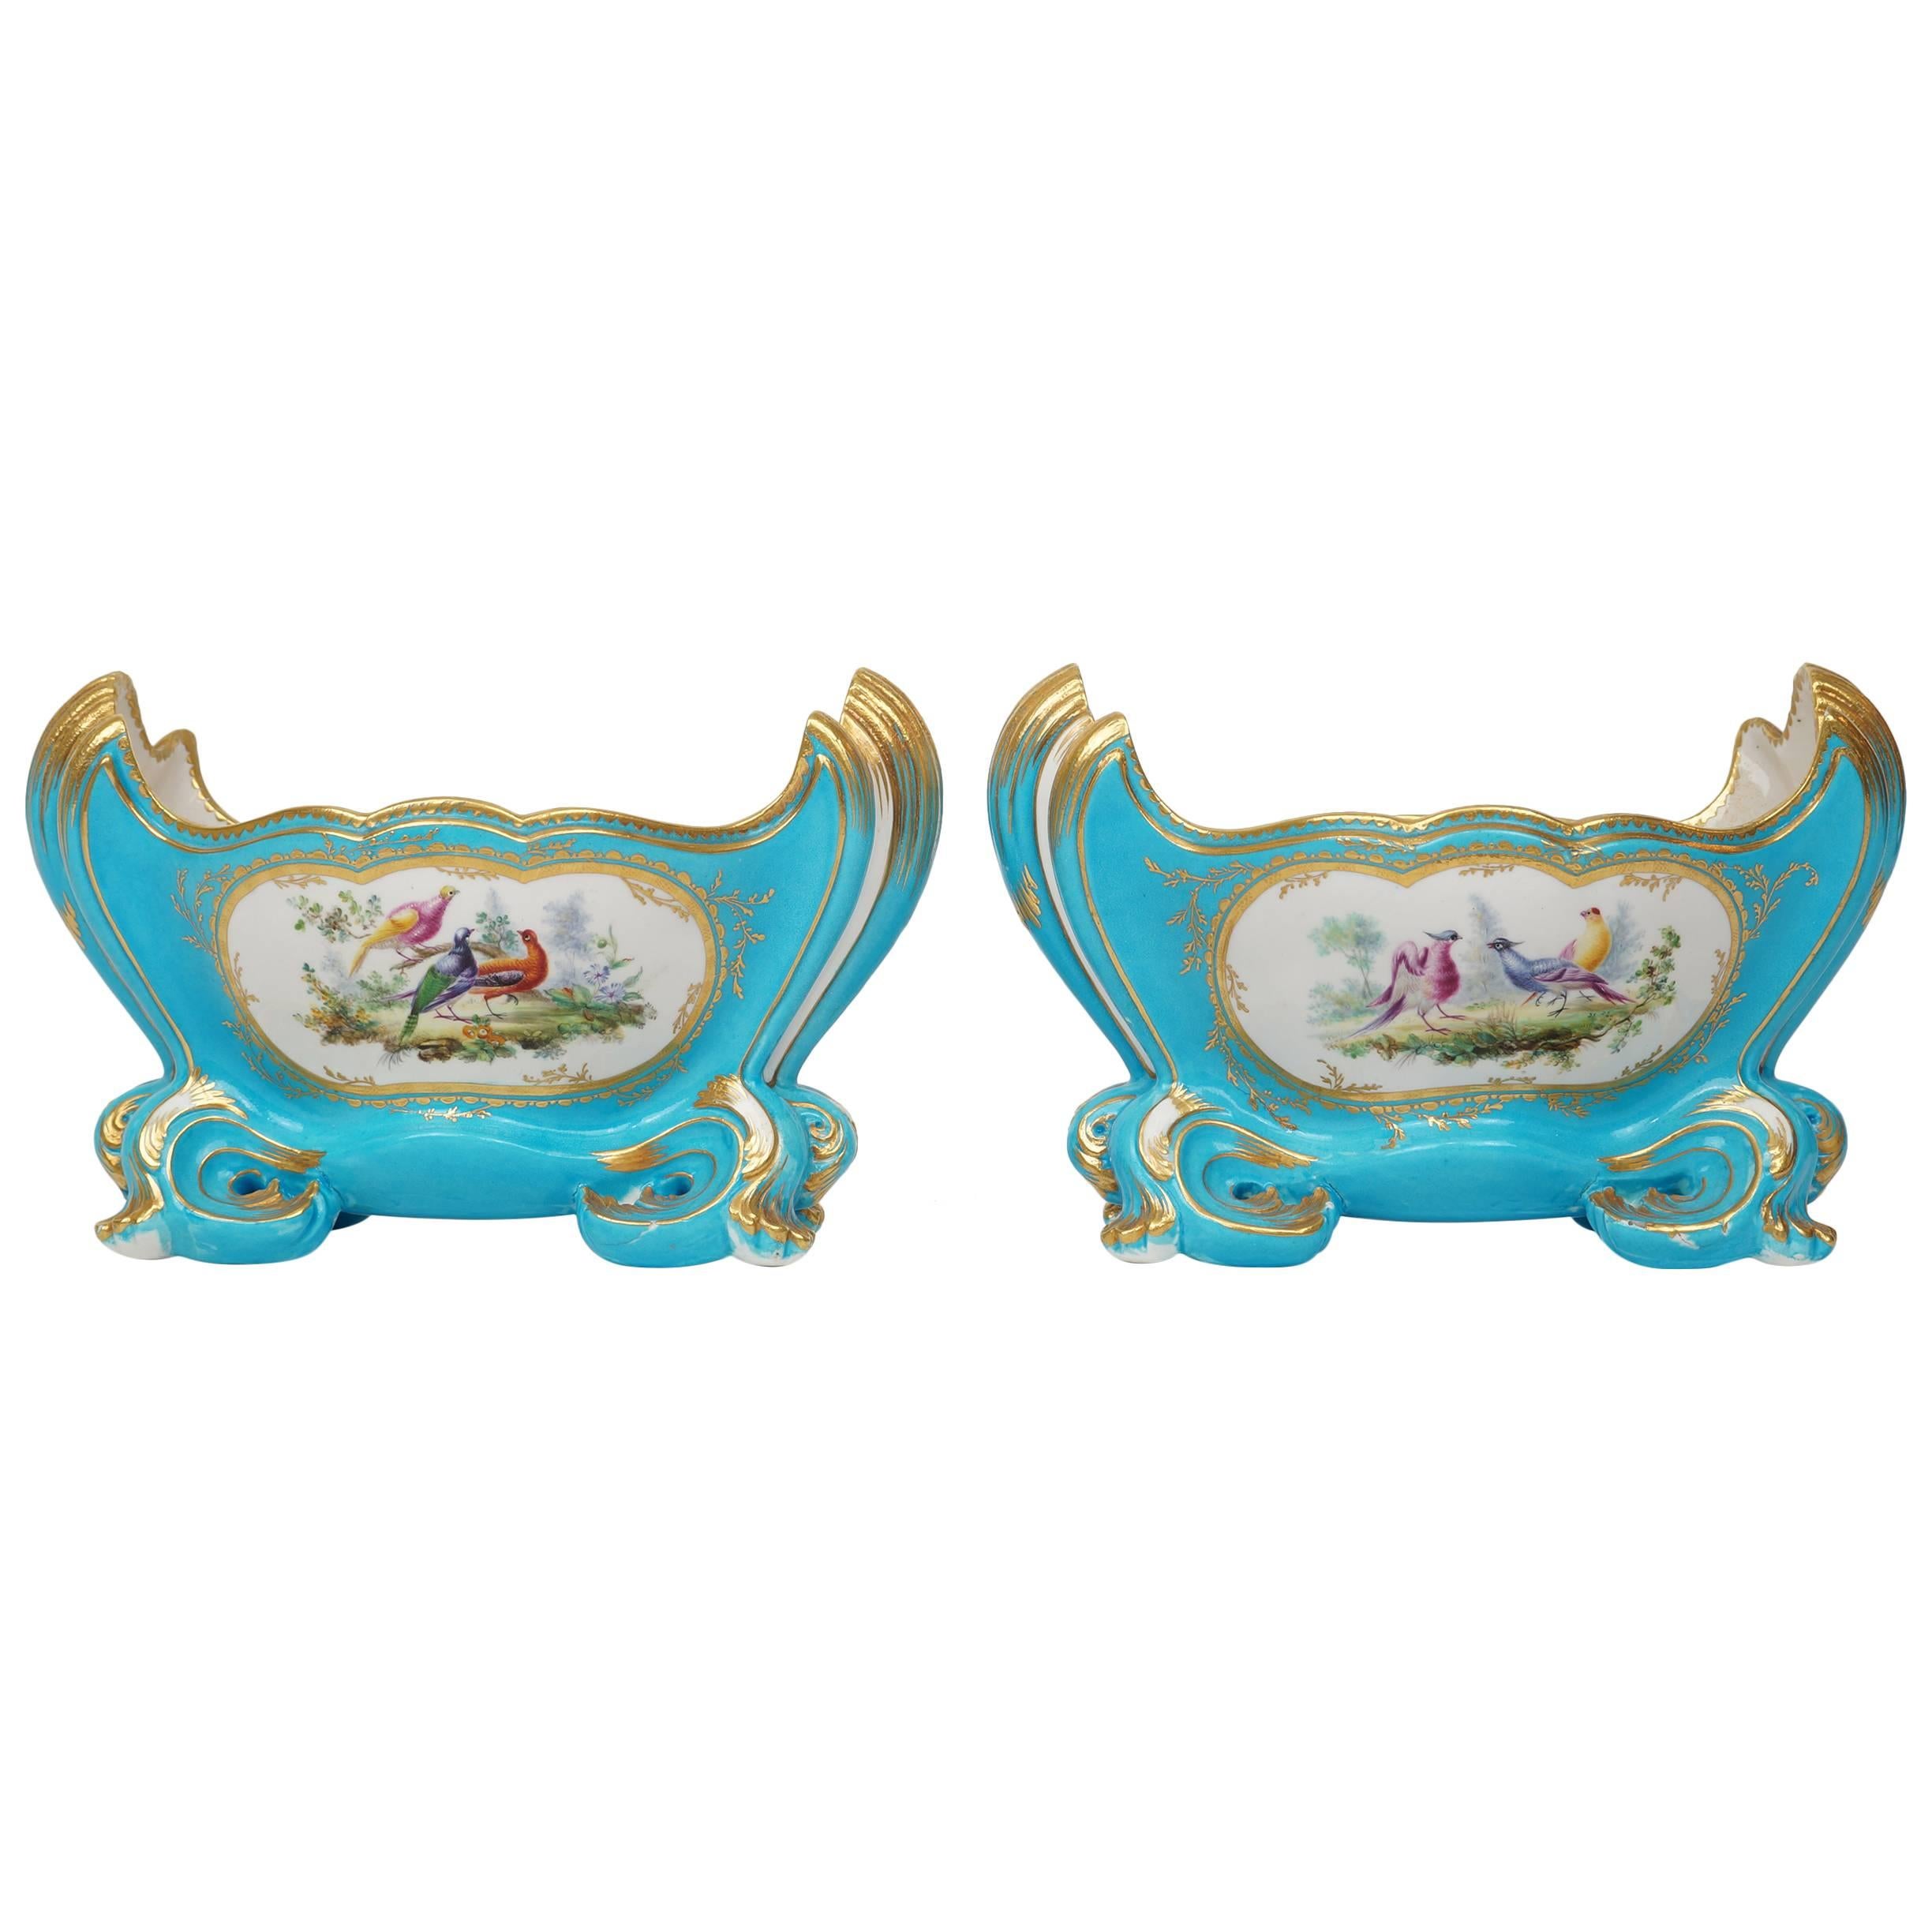 Pair of Celeste Light Blue Porcelain Cache Pots with Painted Bird Scenes